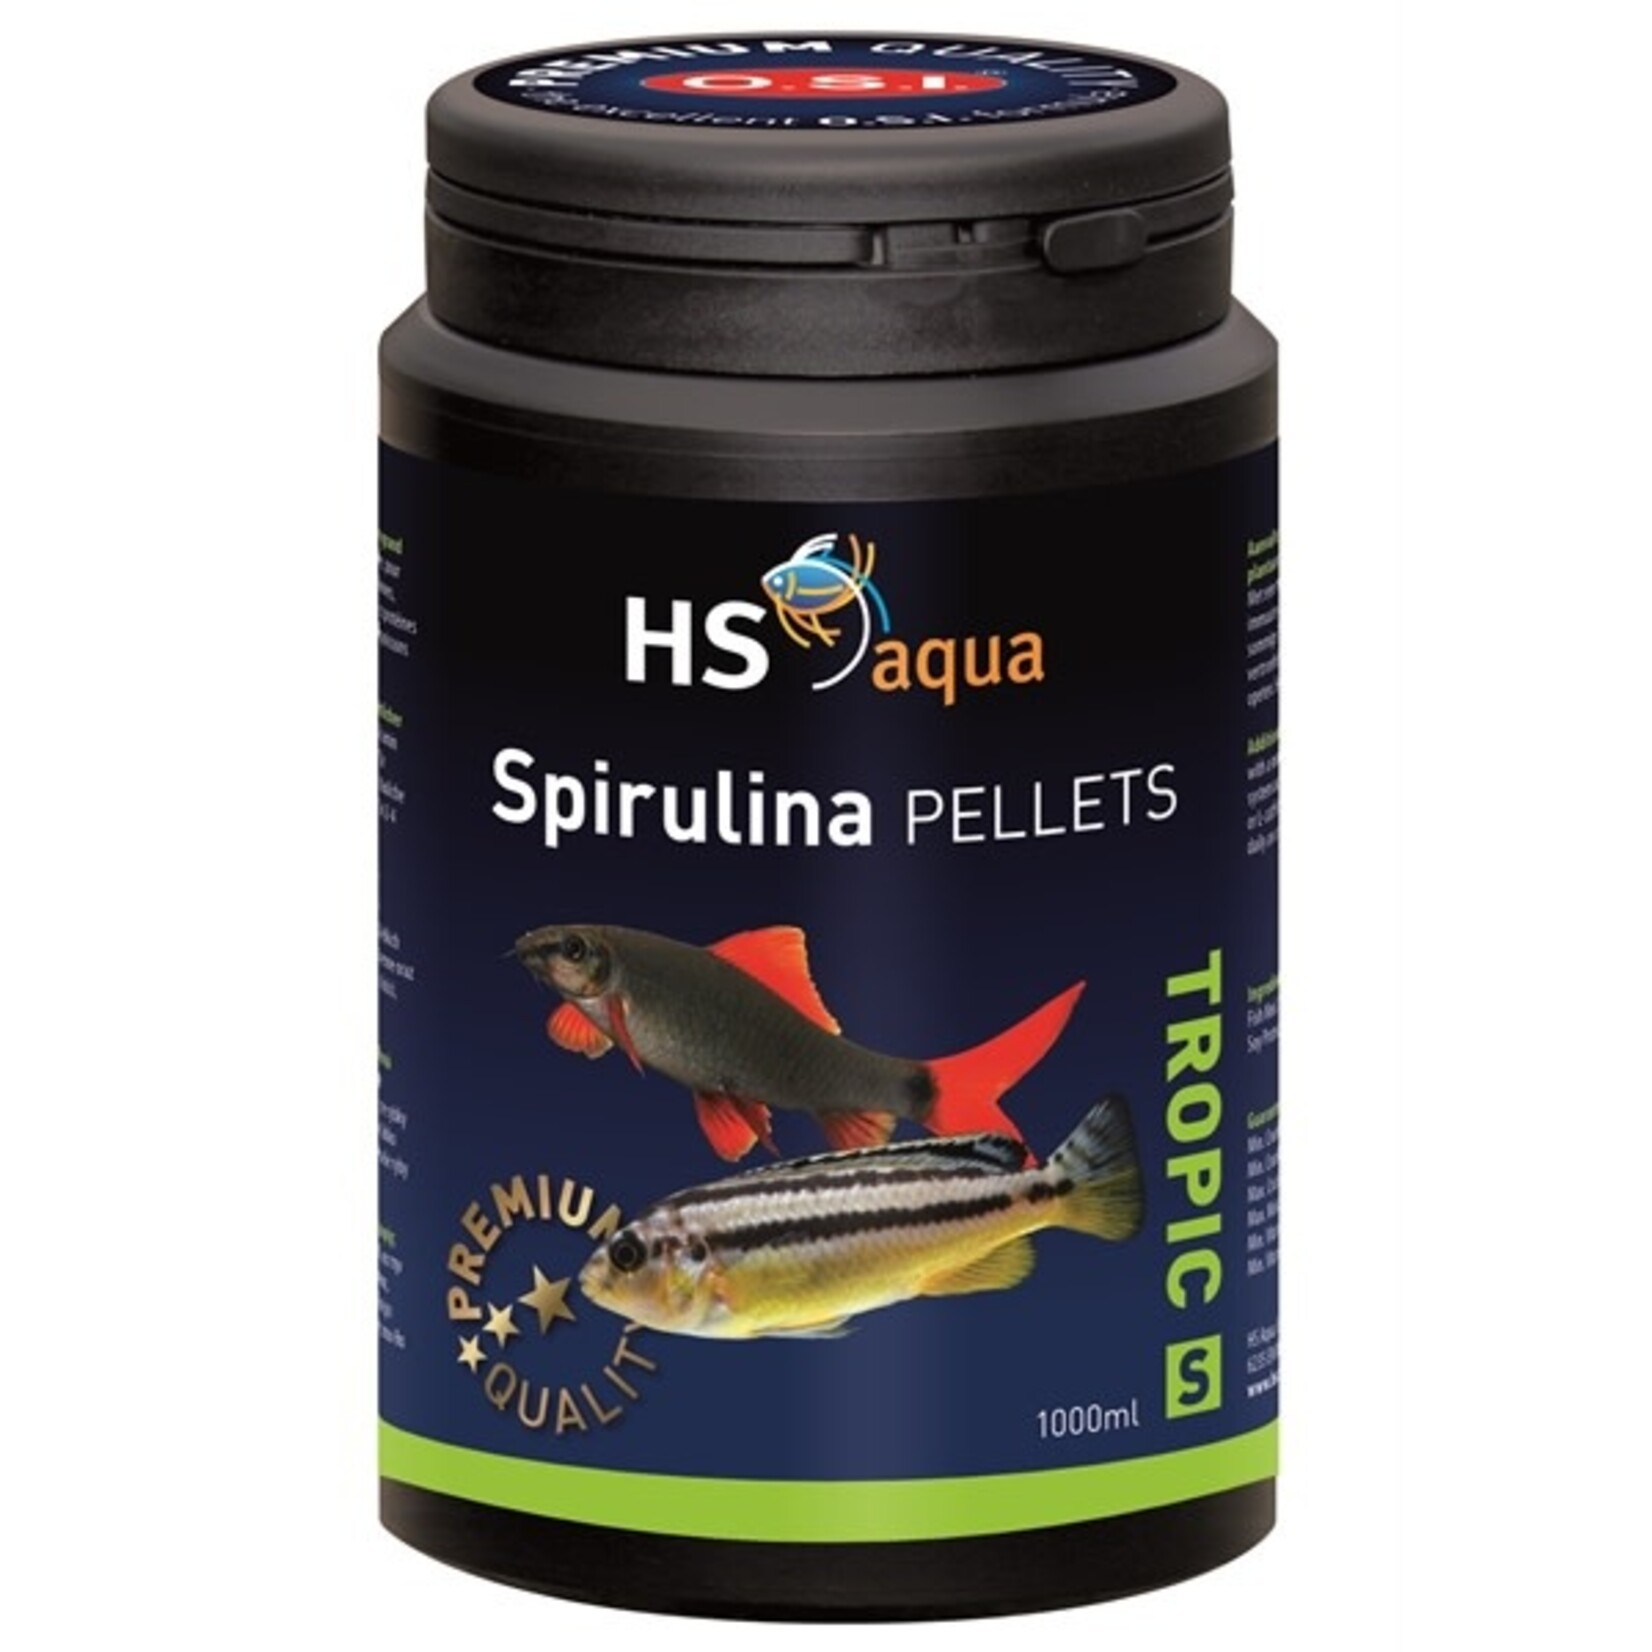 HS Aqua Spirulina pellets s 1000 ml